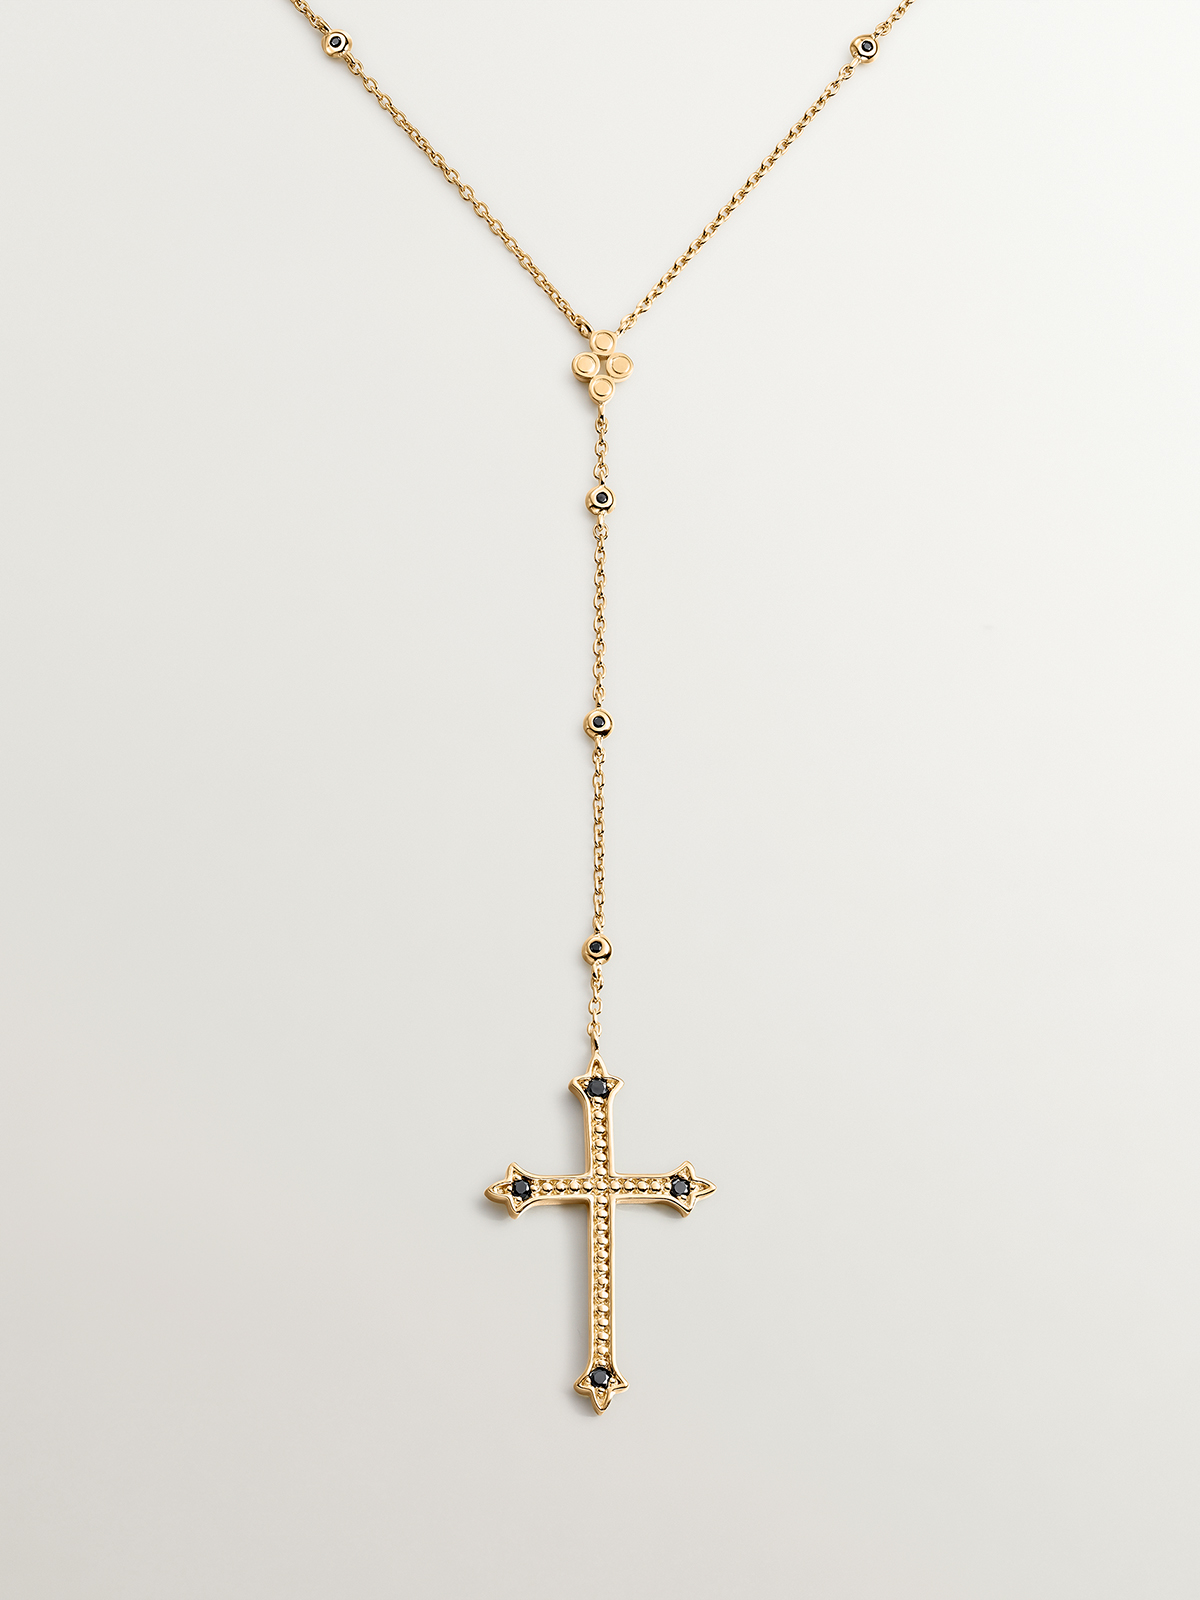 Collier en argent 925 plaqué or jaune 18K avec une grande croix et des spinelles.